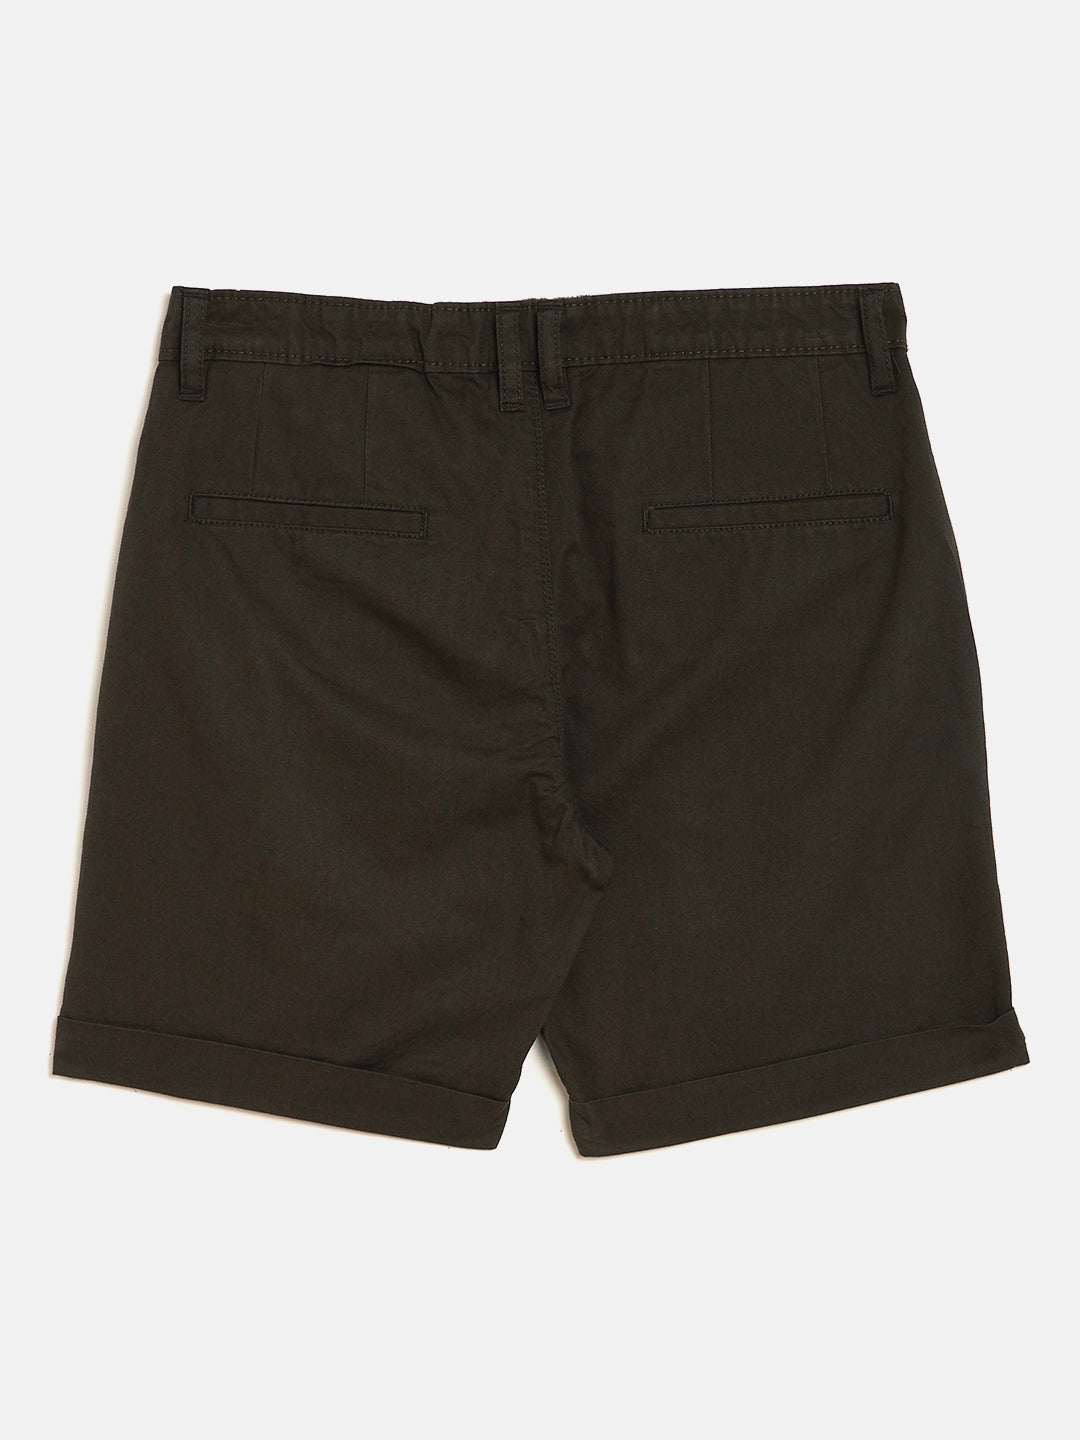 Olive Slim Fit Shorts - Boys Shorts